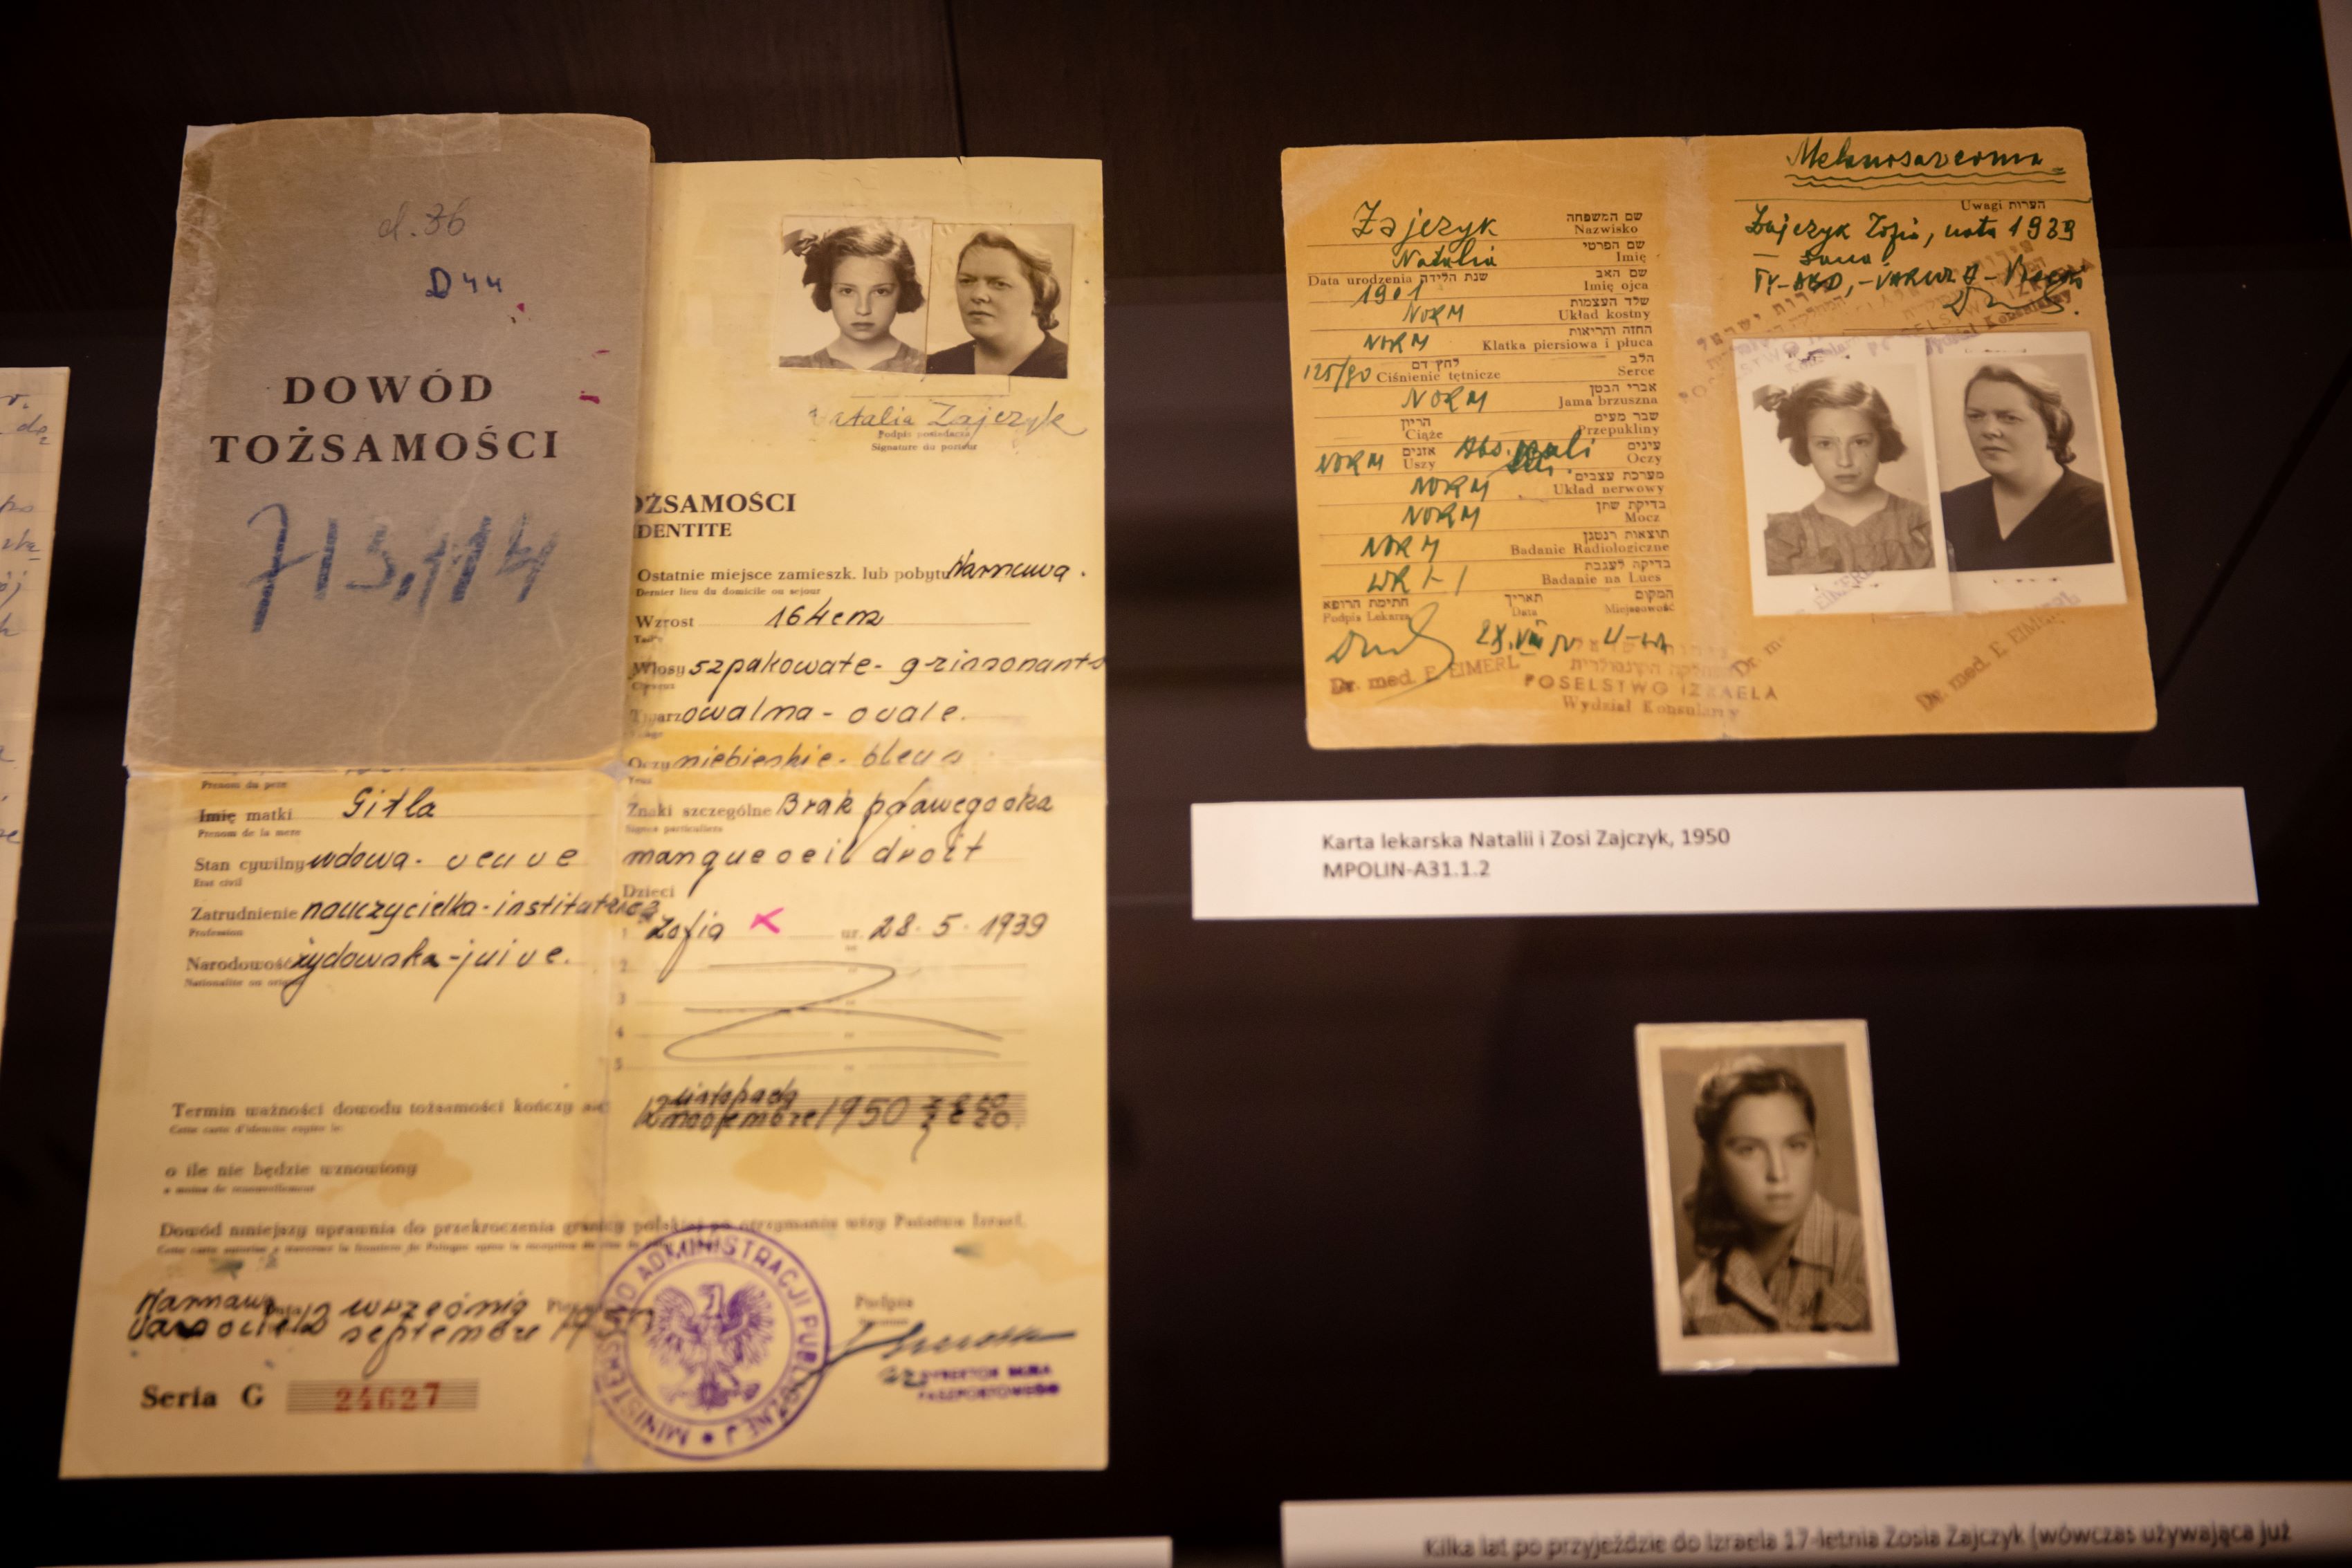 Pamiątki rodzinne Zajczyków w Centrum Informacji Historycznej w Muzeum POLIN. Wśród nich dowód tożsamości i zdjęcie Natalii Zajczyk, karta lekarska Natalii i Zofii Zajczyk.